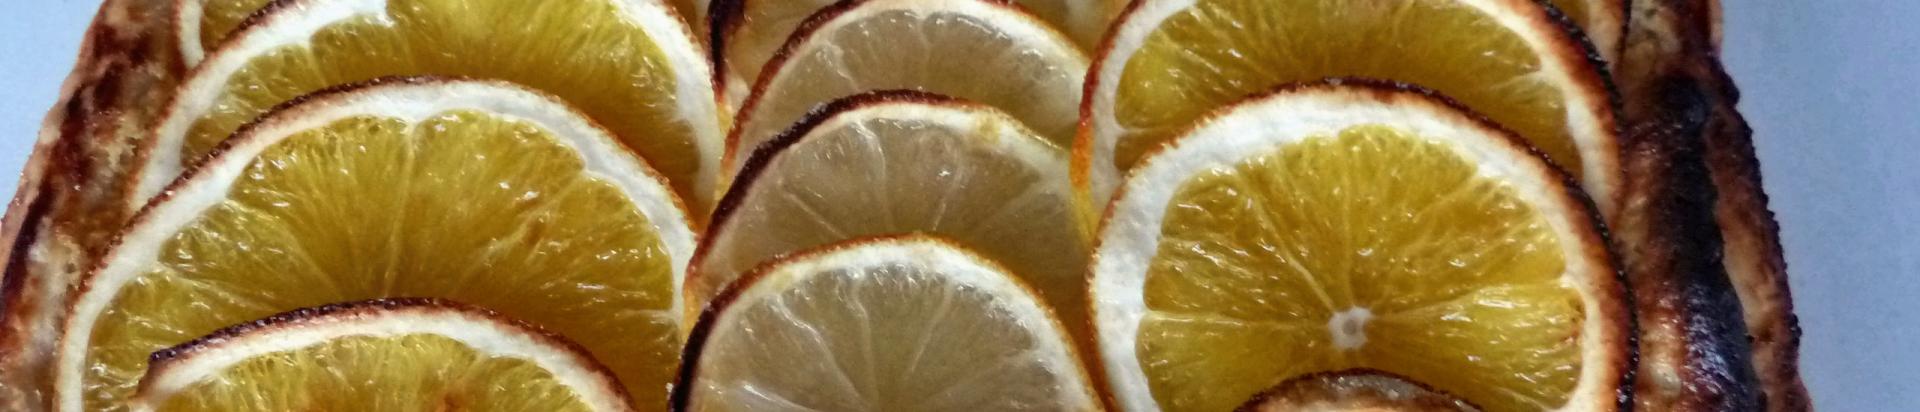 Tarte orange et citron